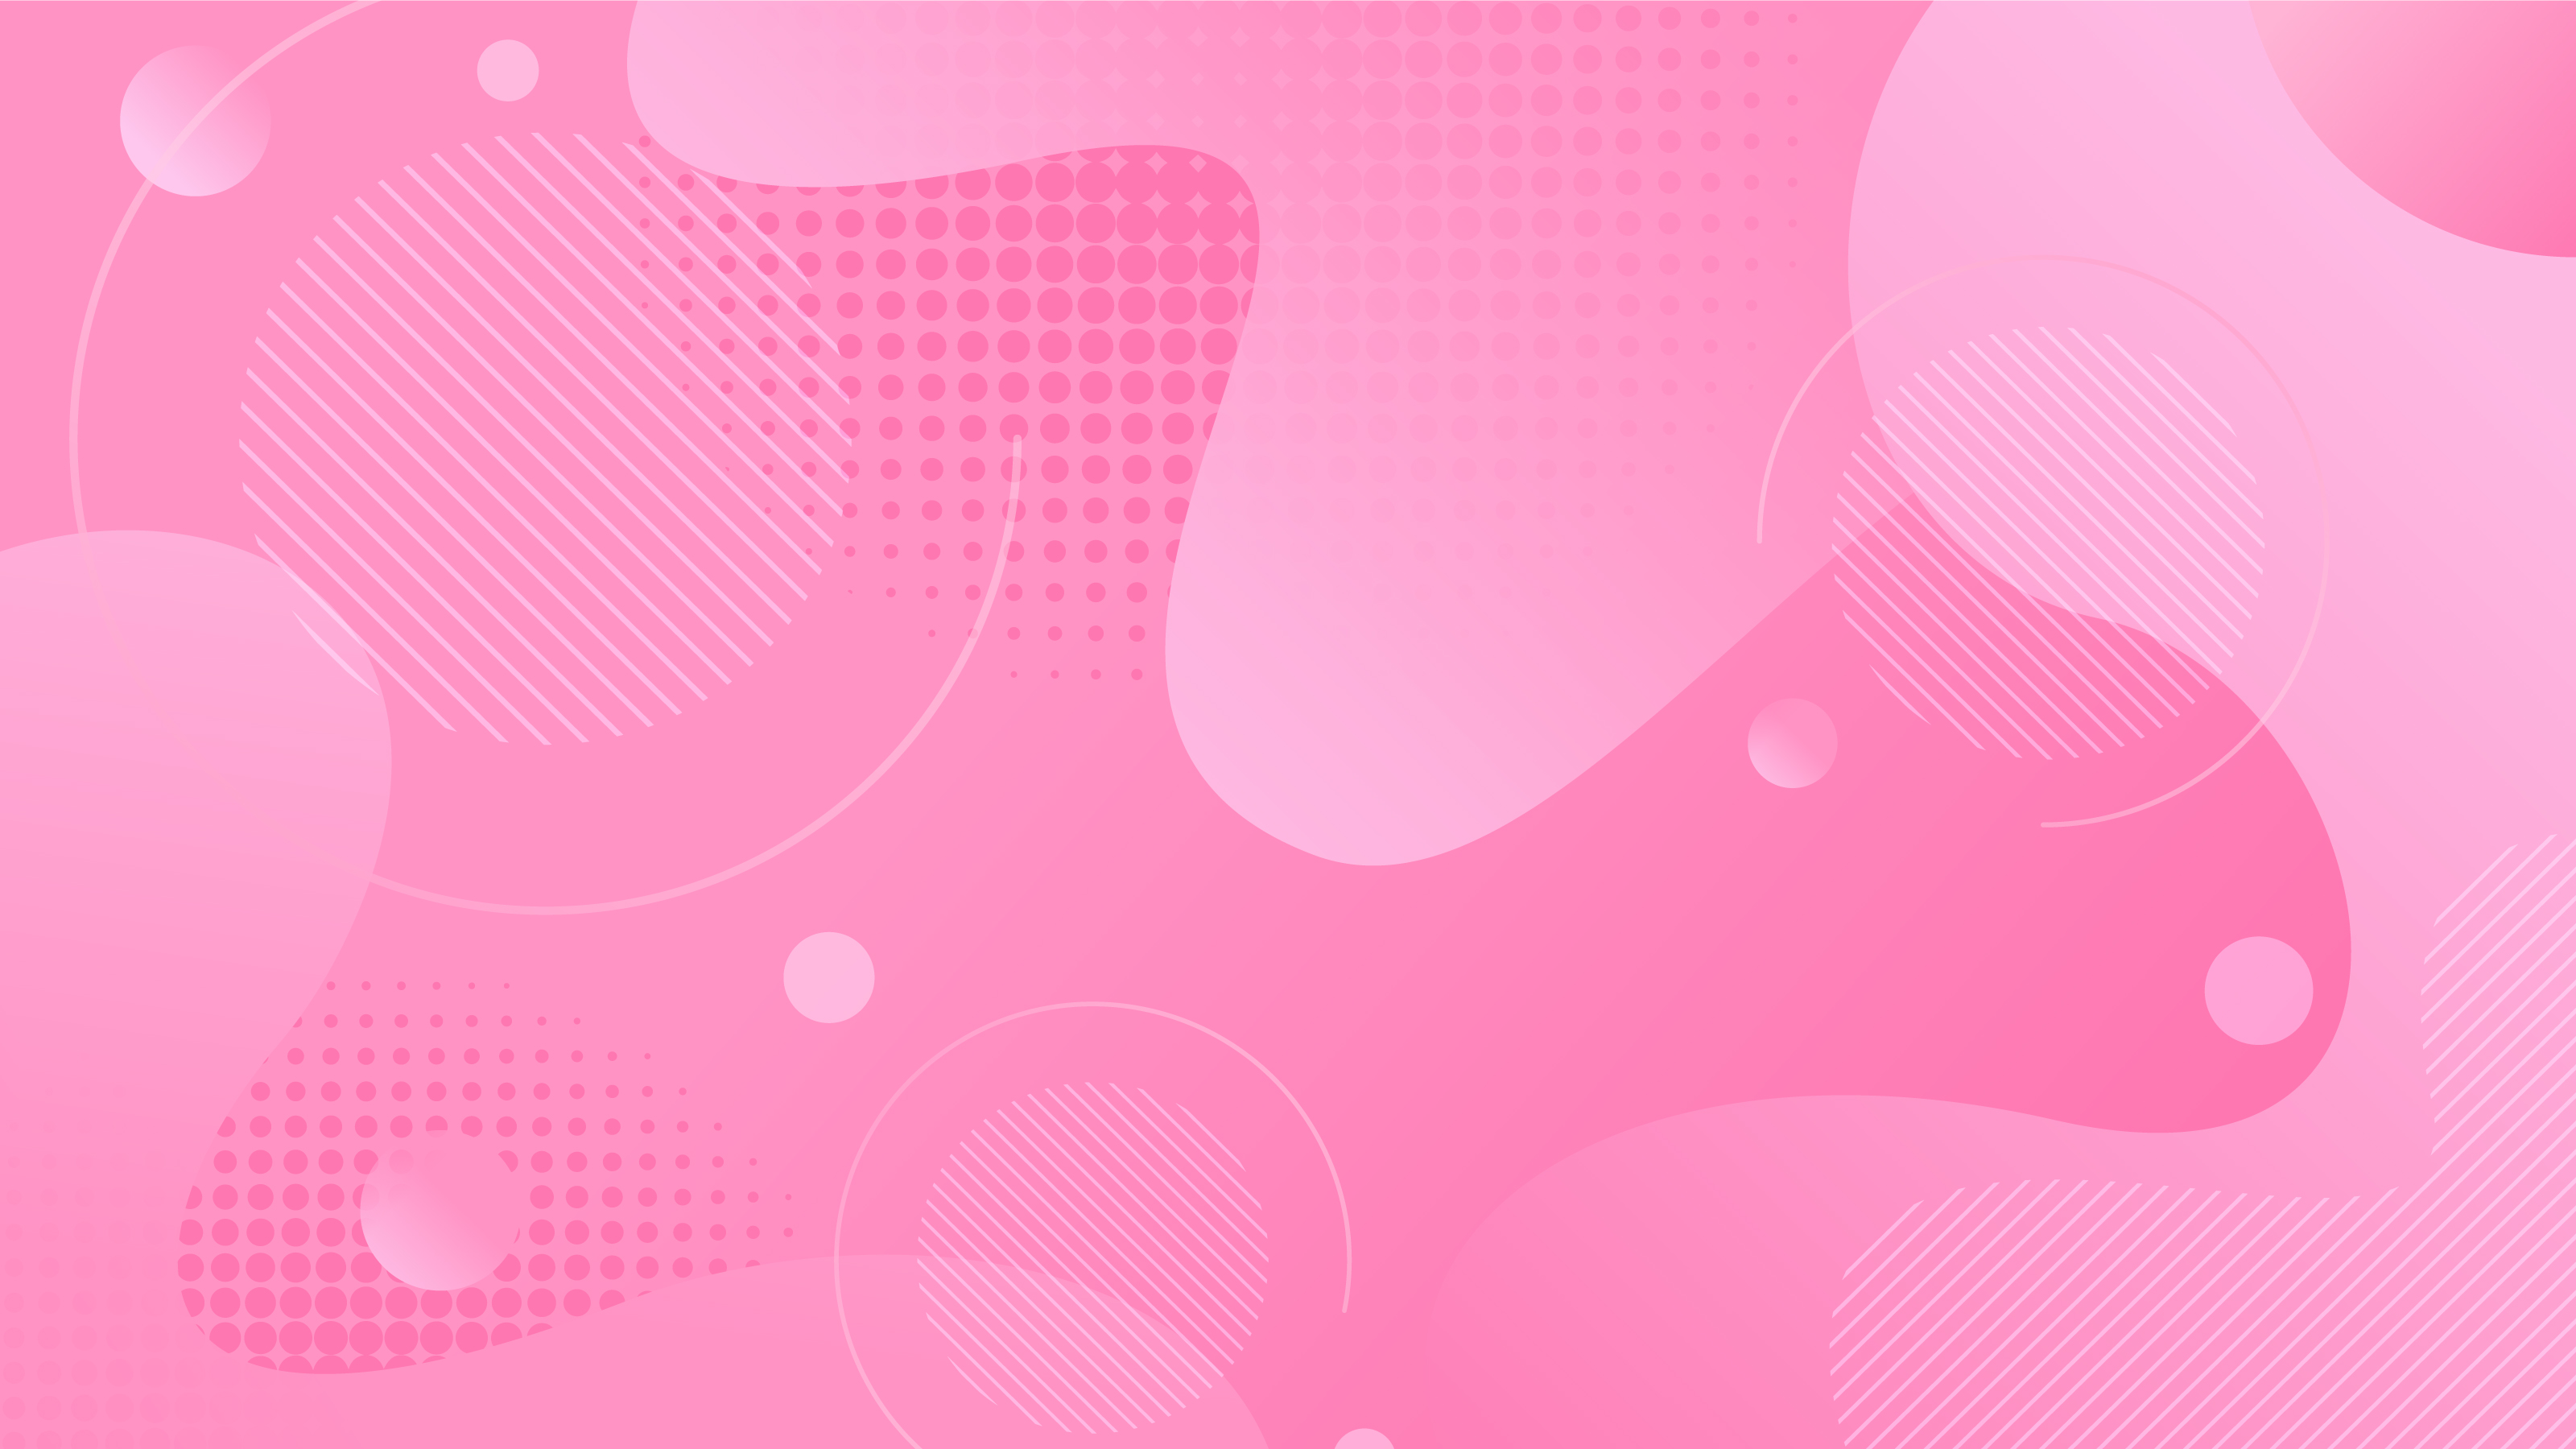 Hình nền trừu tượng Nước hồng động động 1410432 Vector Art tại Vecteezy sẽ khiến bạn say mê bởi vẻ đẹp mang tính trừu tượng huyền bí. Những đường nét và gam màu này tạo nên một sự độc đáo và tinh tế để bạn lựa chọn cho màn hình của mình. Hãy trải nghiệm sự mới lạ của tổng hợp nghệ thuật này.